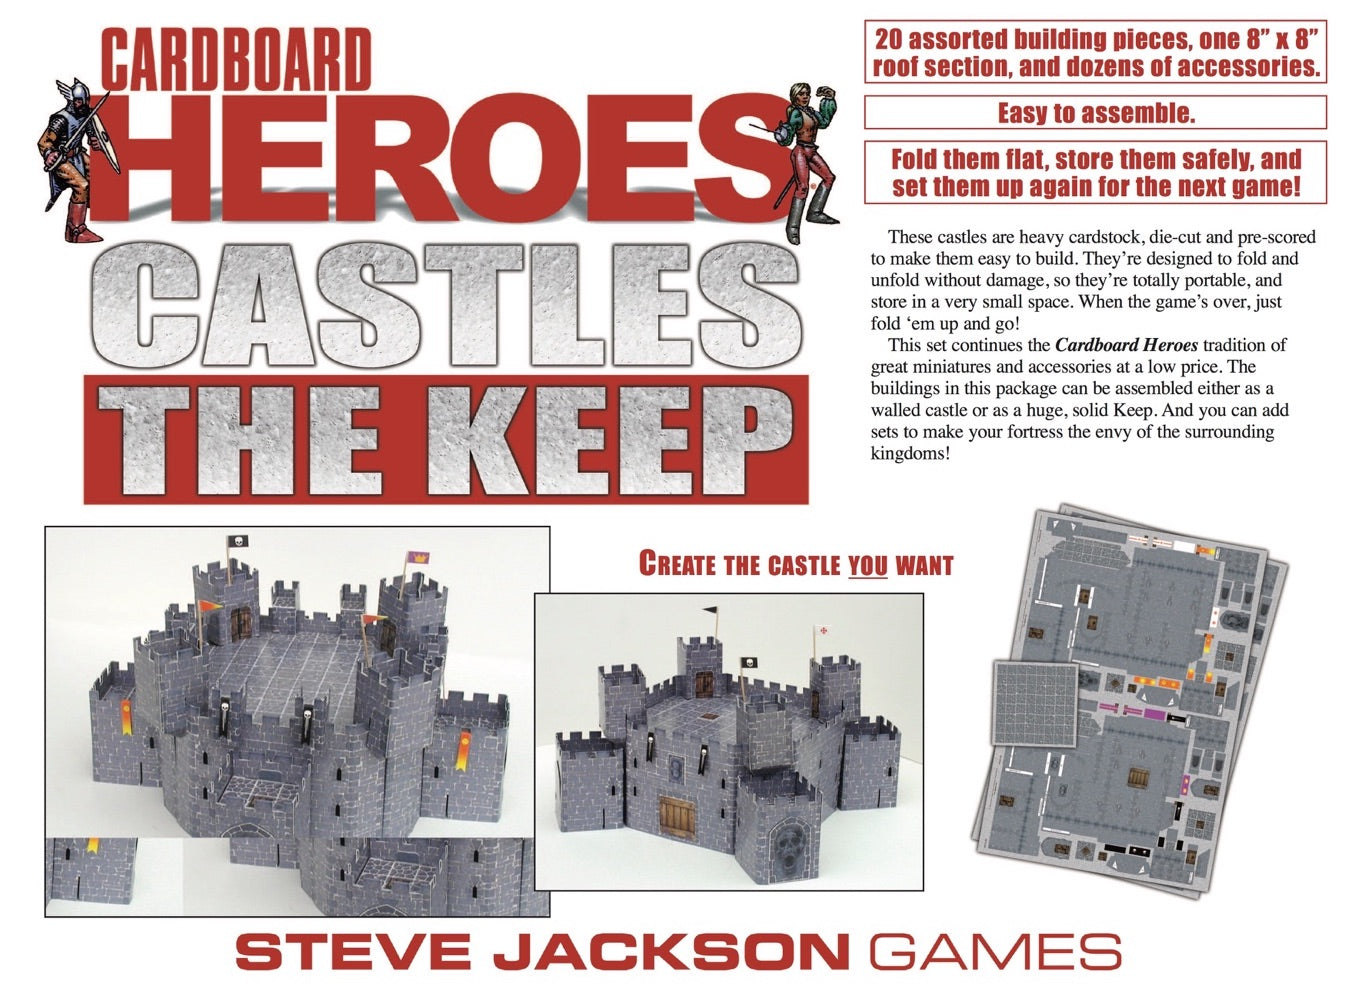 Cardboard Heroes Castles: The Keep